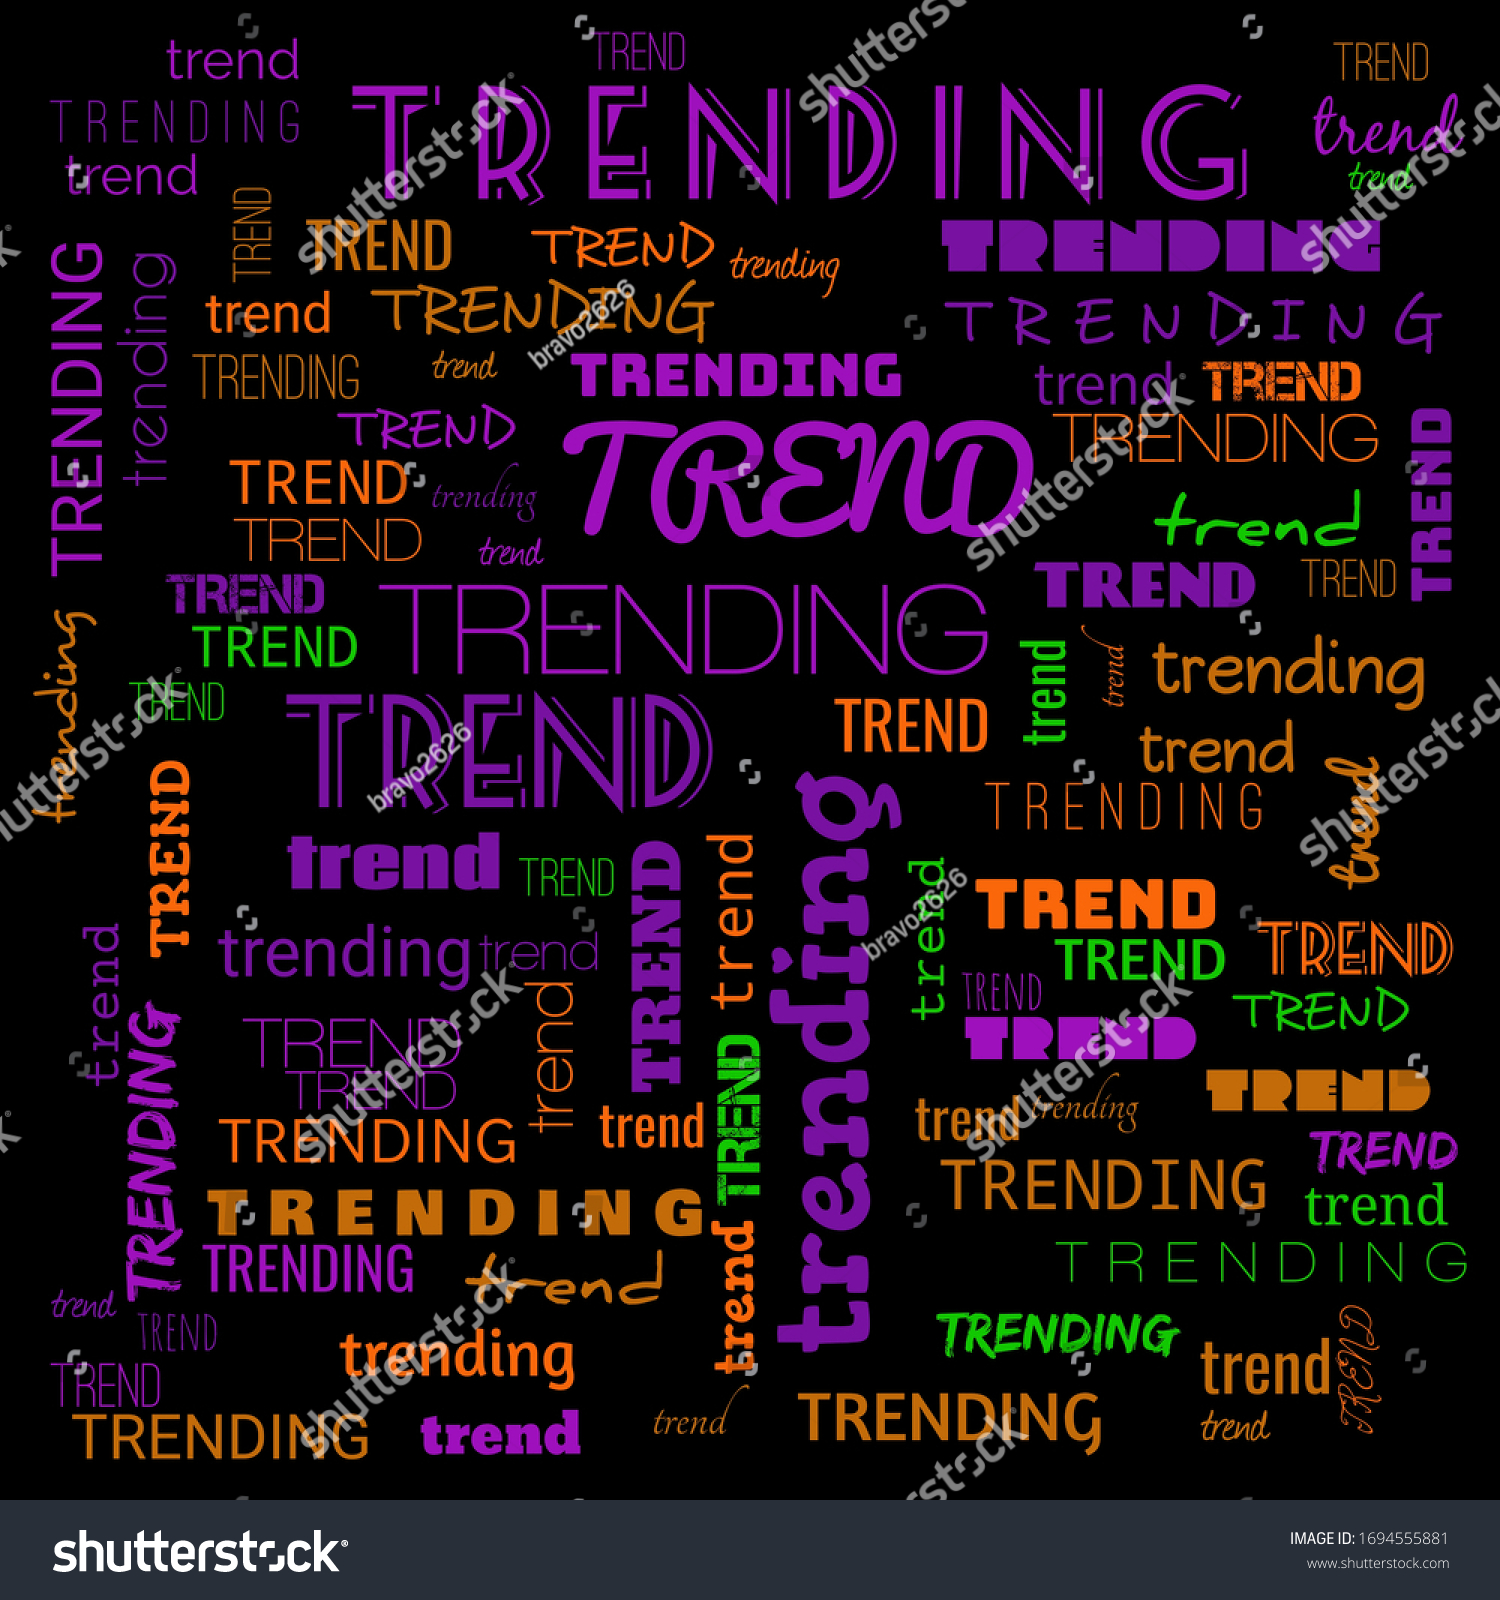 Trending Word Art Top Trending Wordcloud Stock Illustration 1694555881